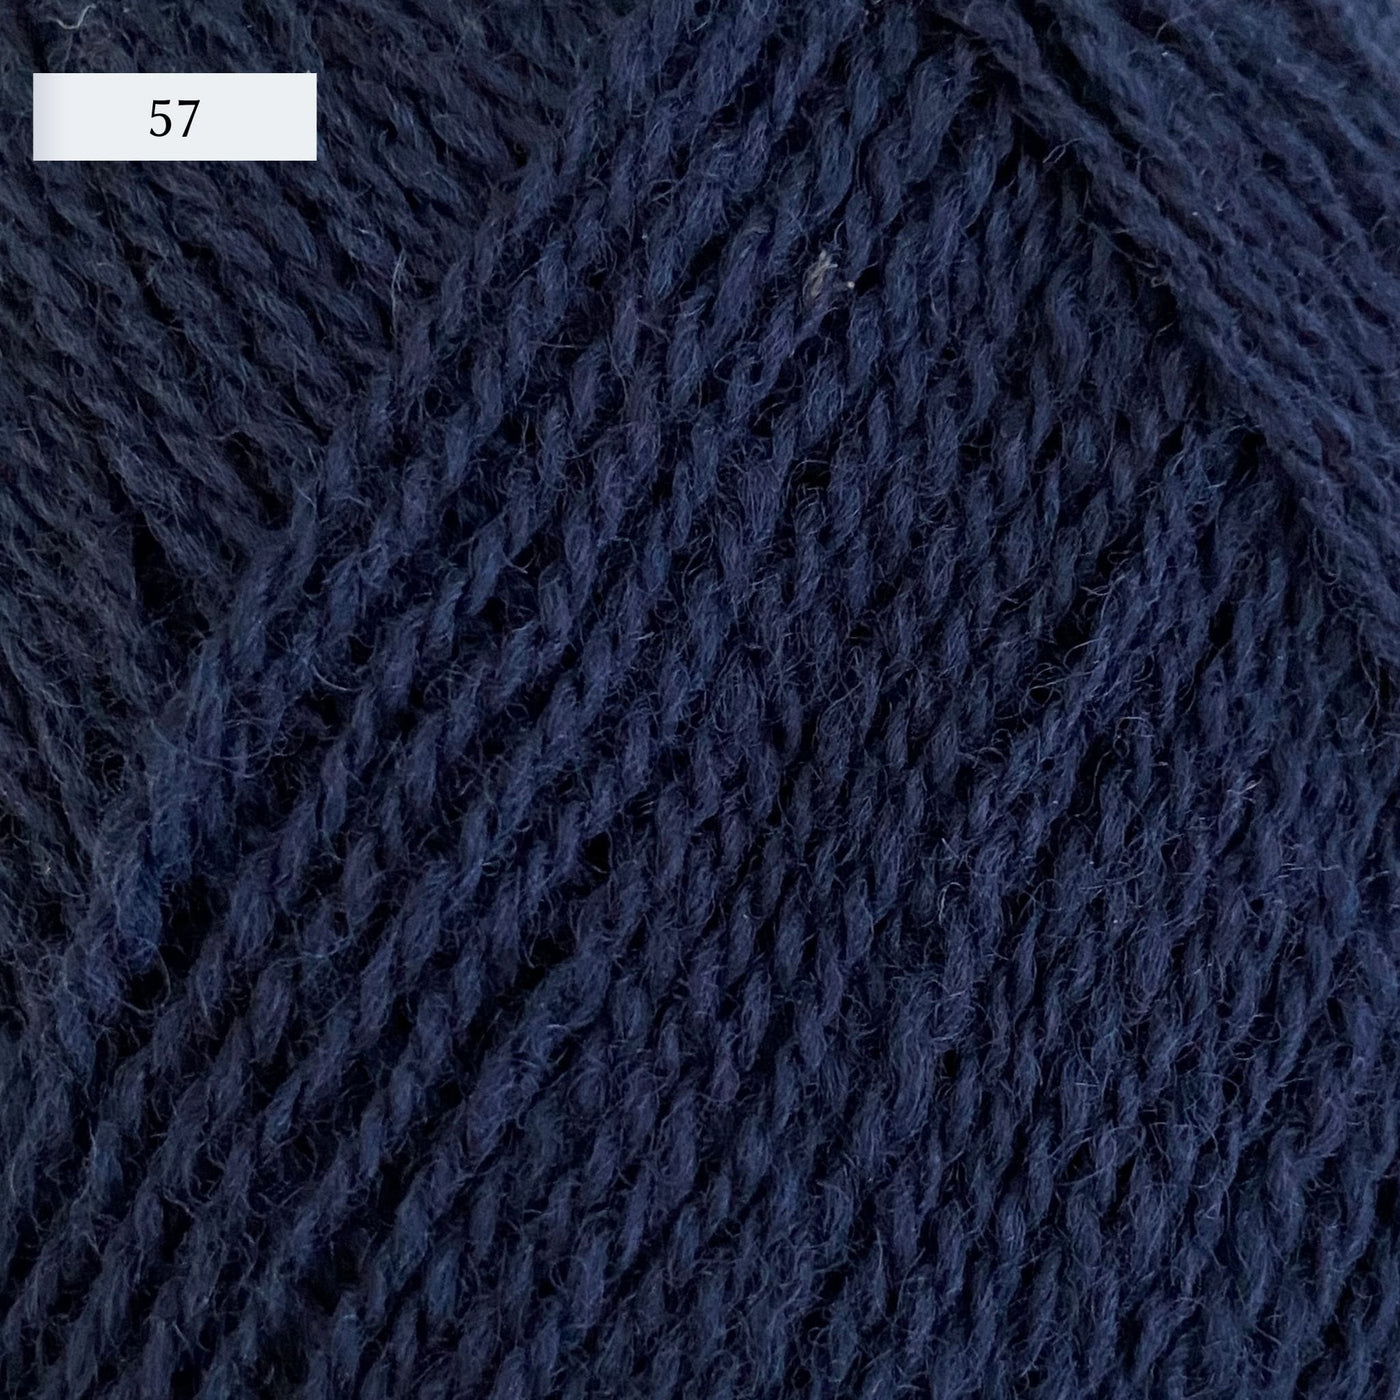 Rauma Lamullgarn, a fingering weight yarn, in color 57, a navy blue